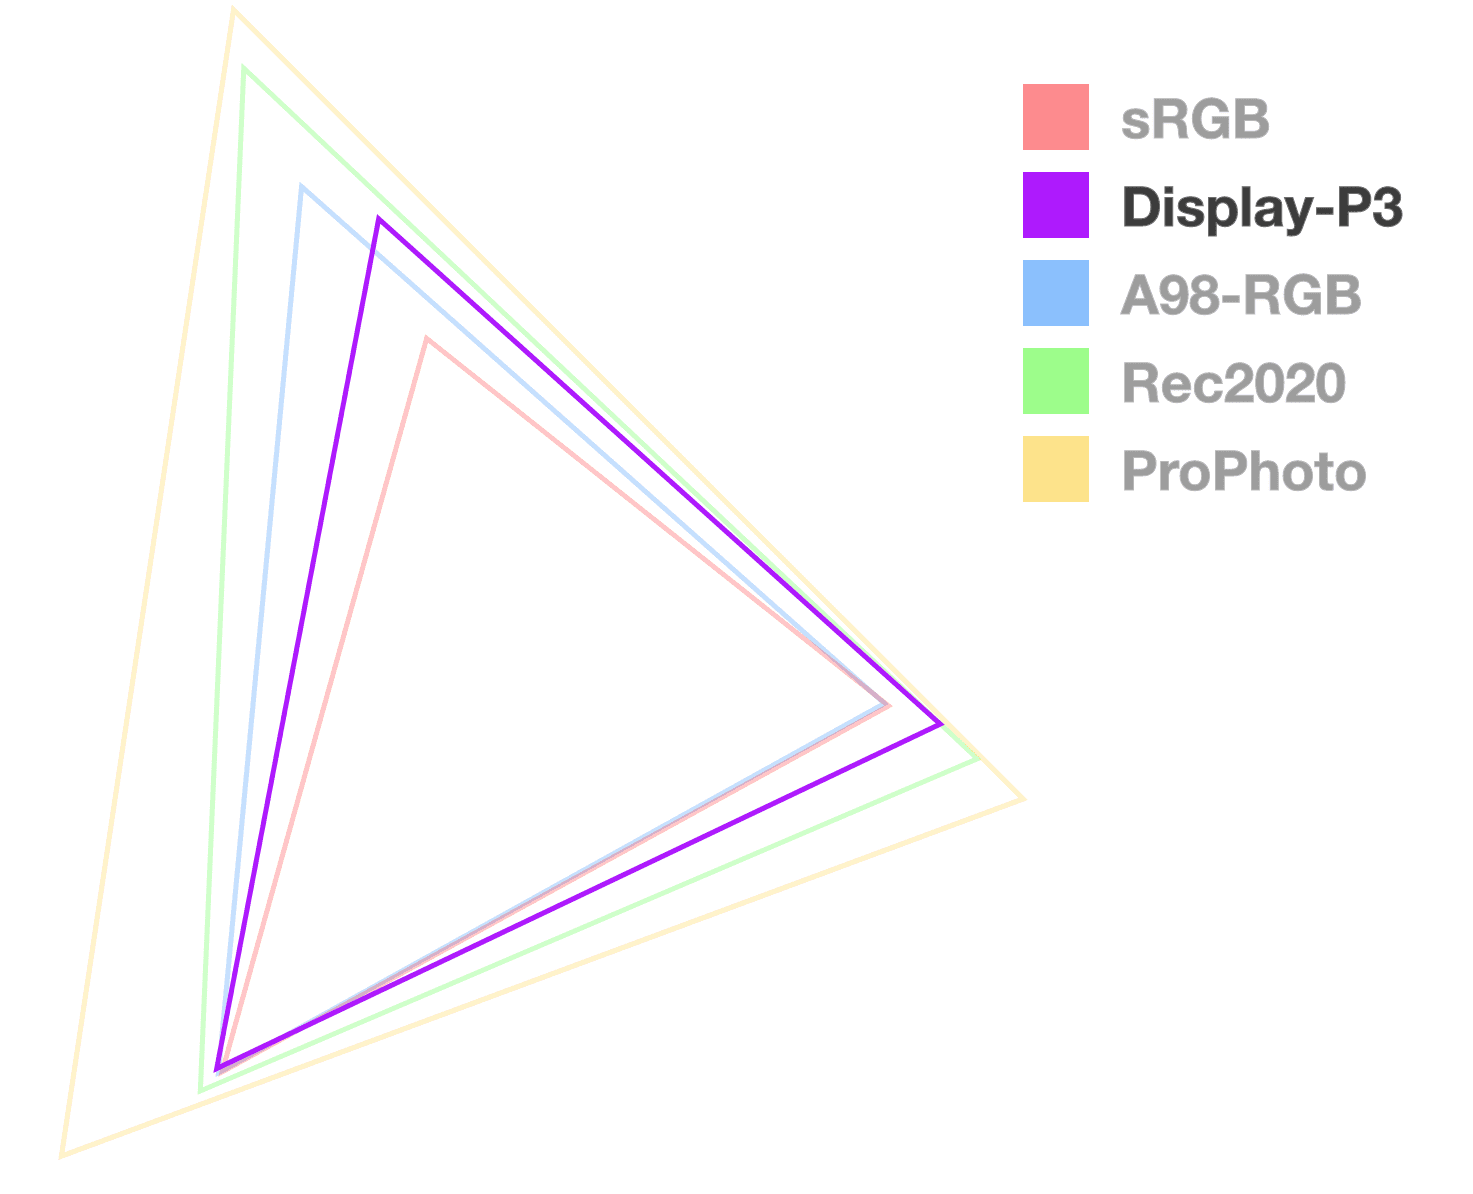 Hình tam giác màn hình P3 là tam giác duy nhất mờ hoàn toàn, để giúp trực quan hoá kích thước của gam màu. Nó có vẻ như thứ 2 từ nhỏ nhất.